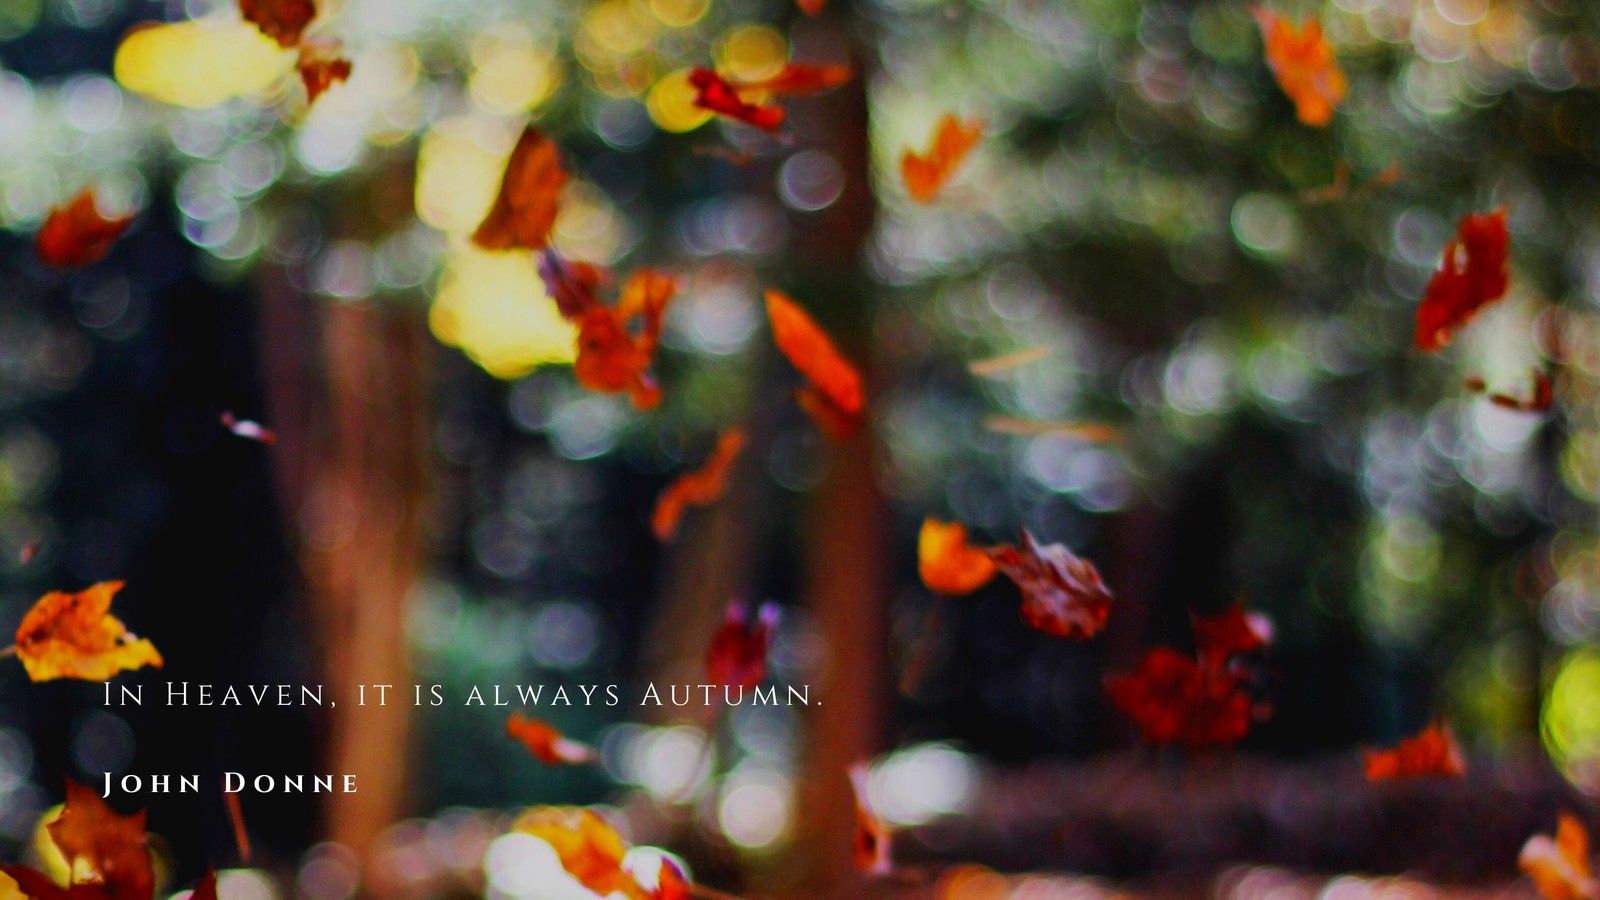 In Heaven, it is always Autumn. John Donne - Fall